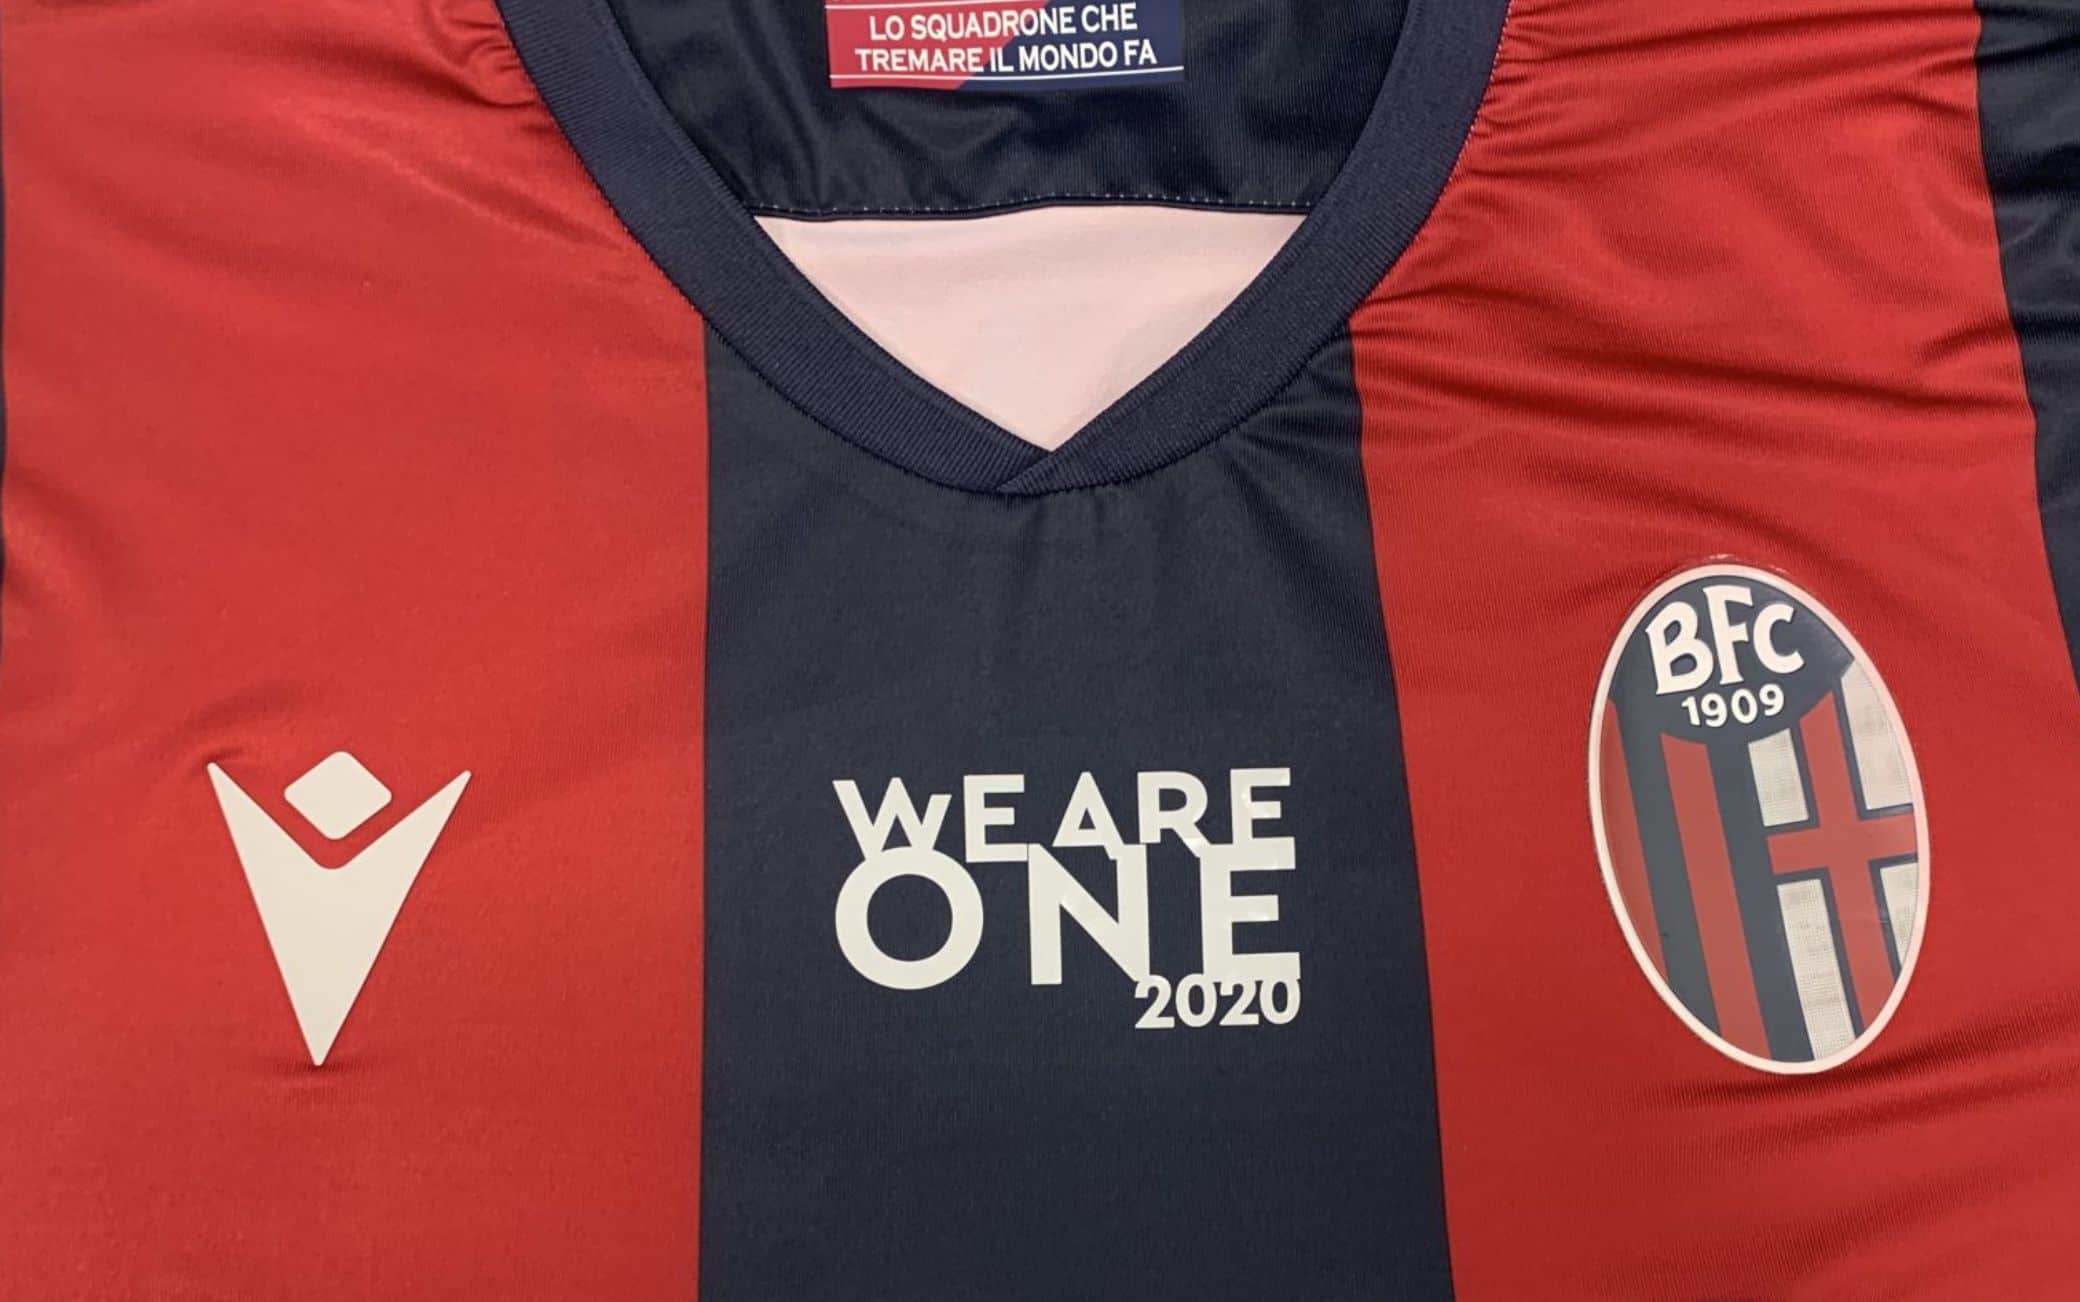 La patch "WeAreOne 2020" sulla maglietta rossoblù - Foto Bologna sito ufficiale